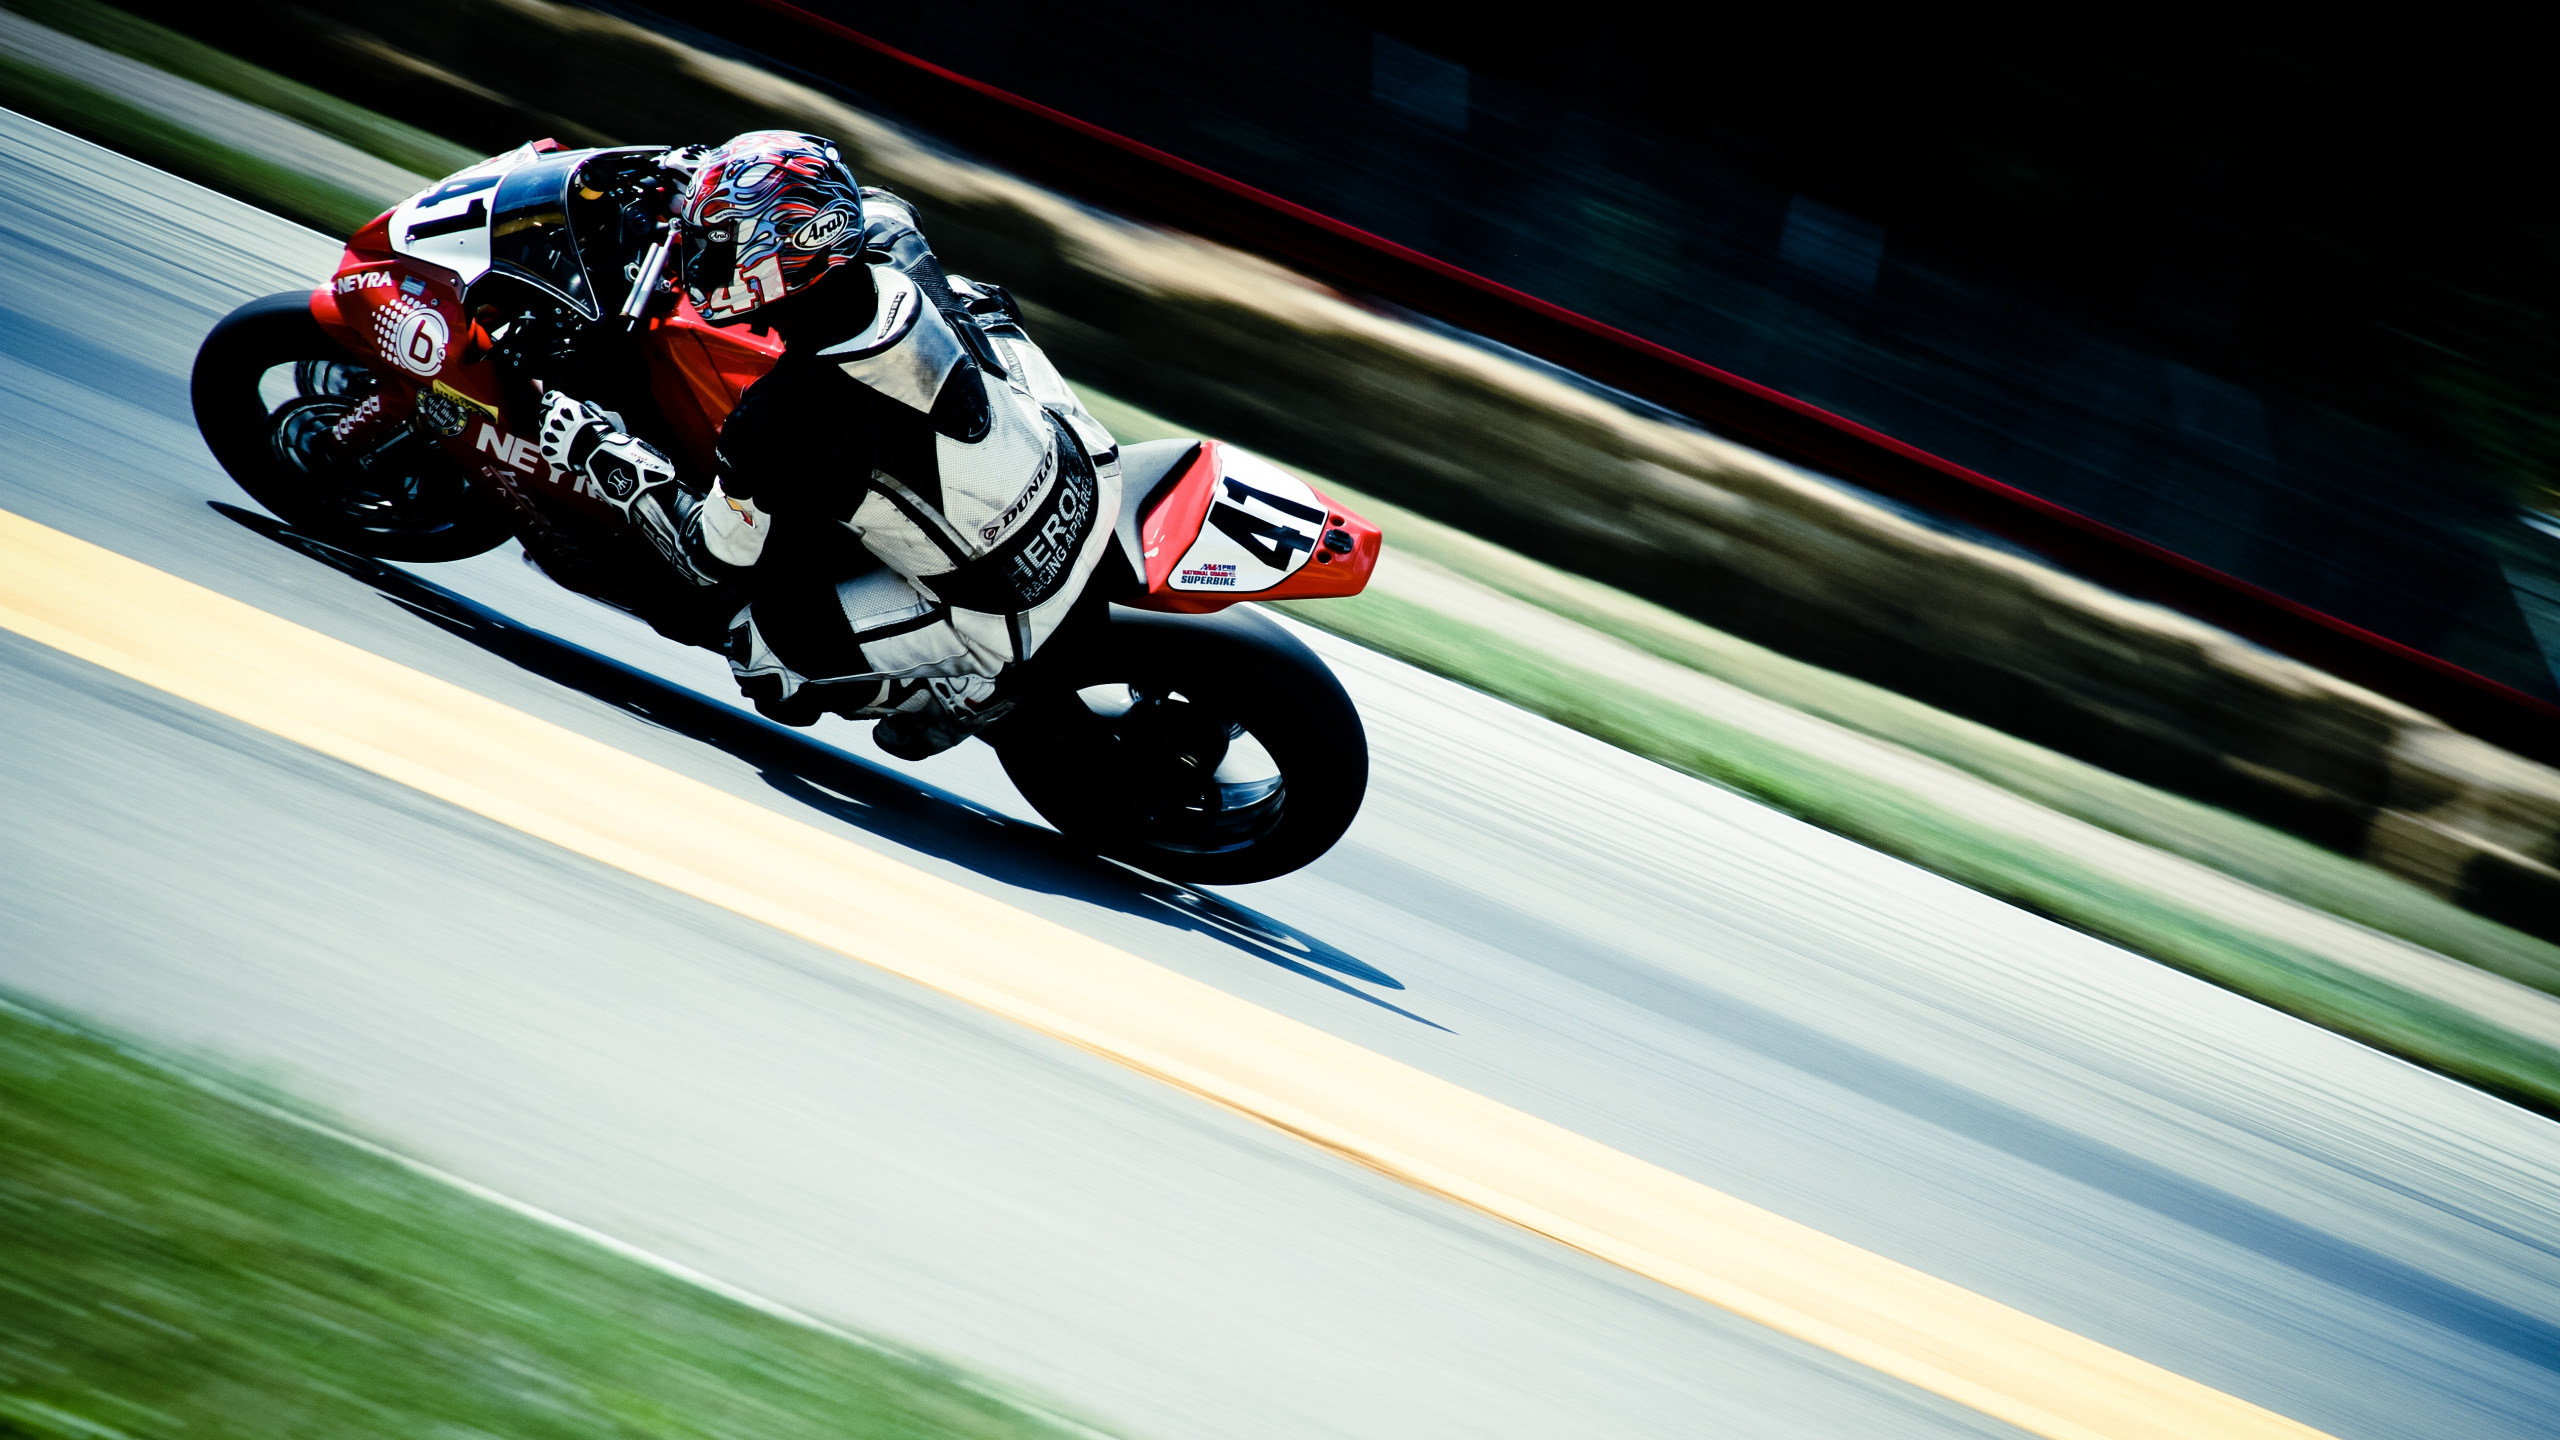 赛道, 超级赛车, 摩托车赛车, 摩托车手, 杜卡迪1098 壁纸 2560x1440 允许